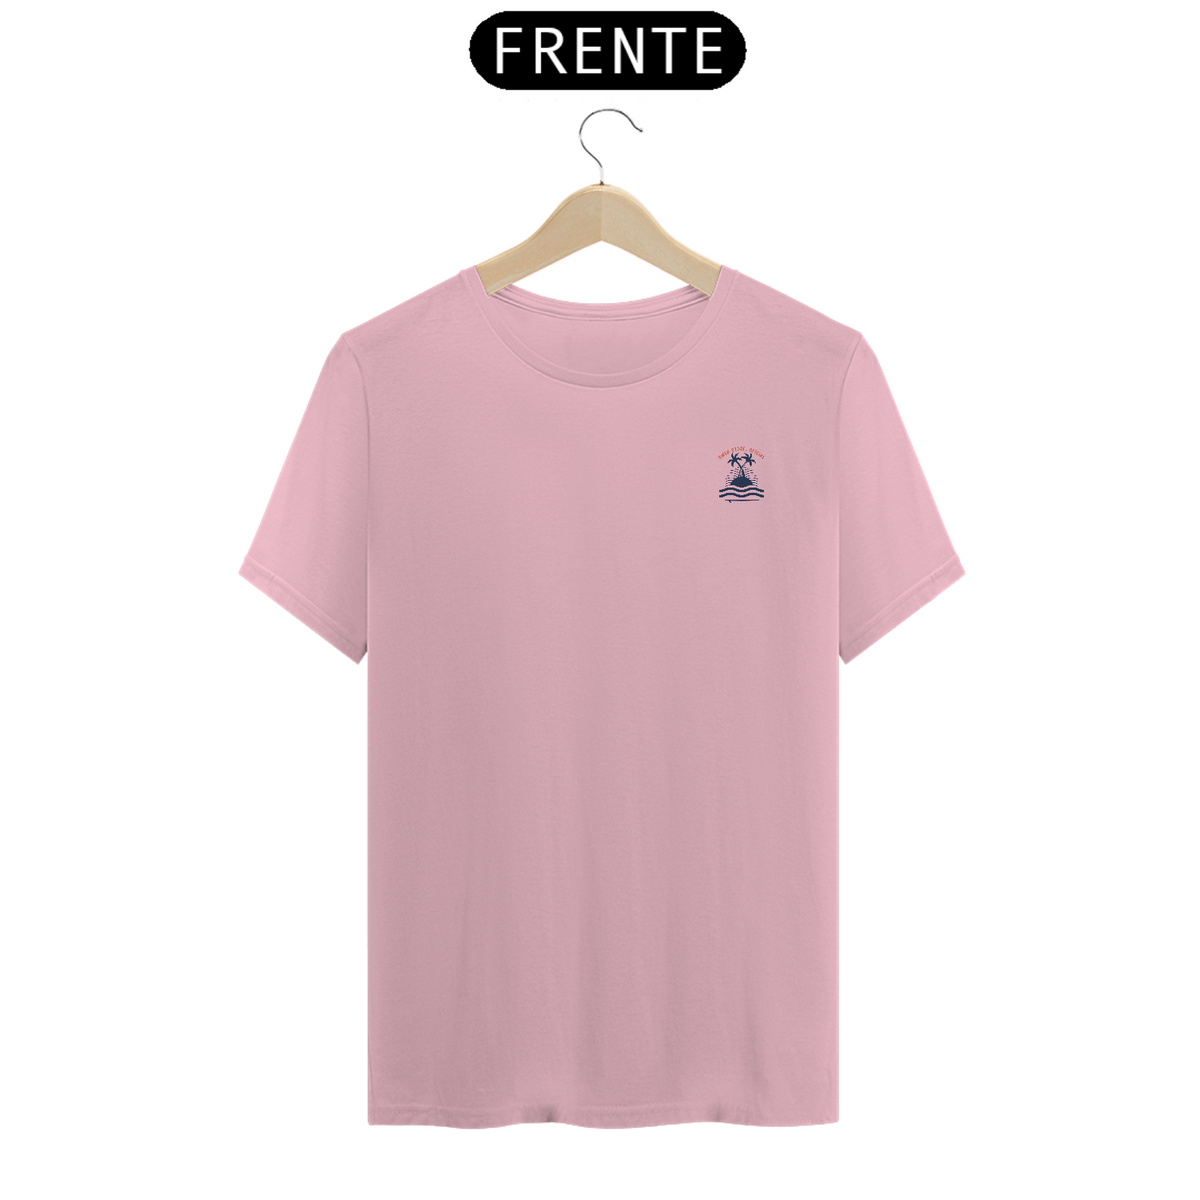 Nome do produto: T-Shirt Pima 